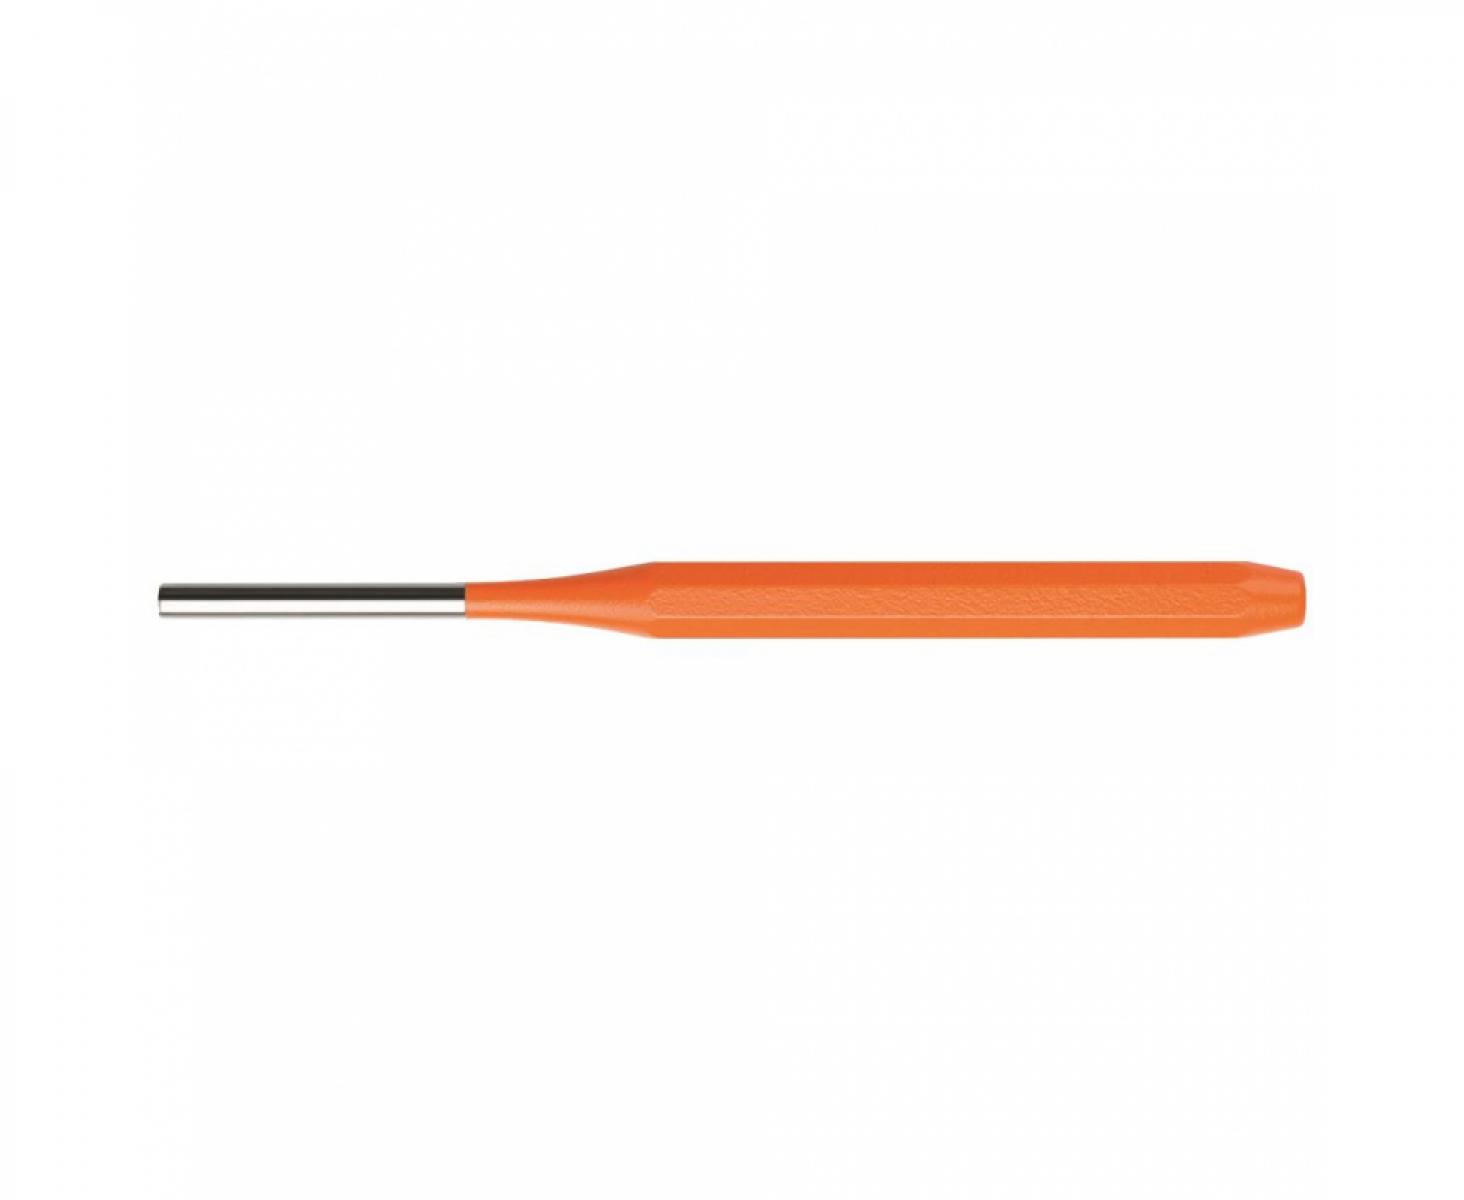 Пробойник восьмигранный цилиндрический PB Swiss Tools PB 755.5 OR оранжевый